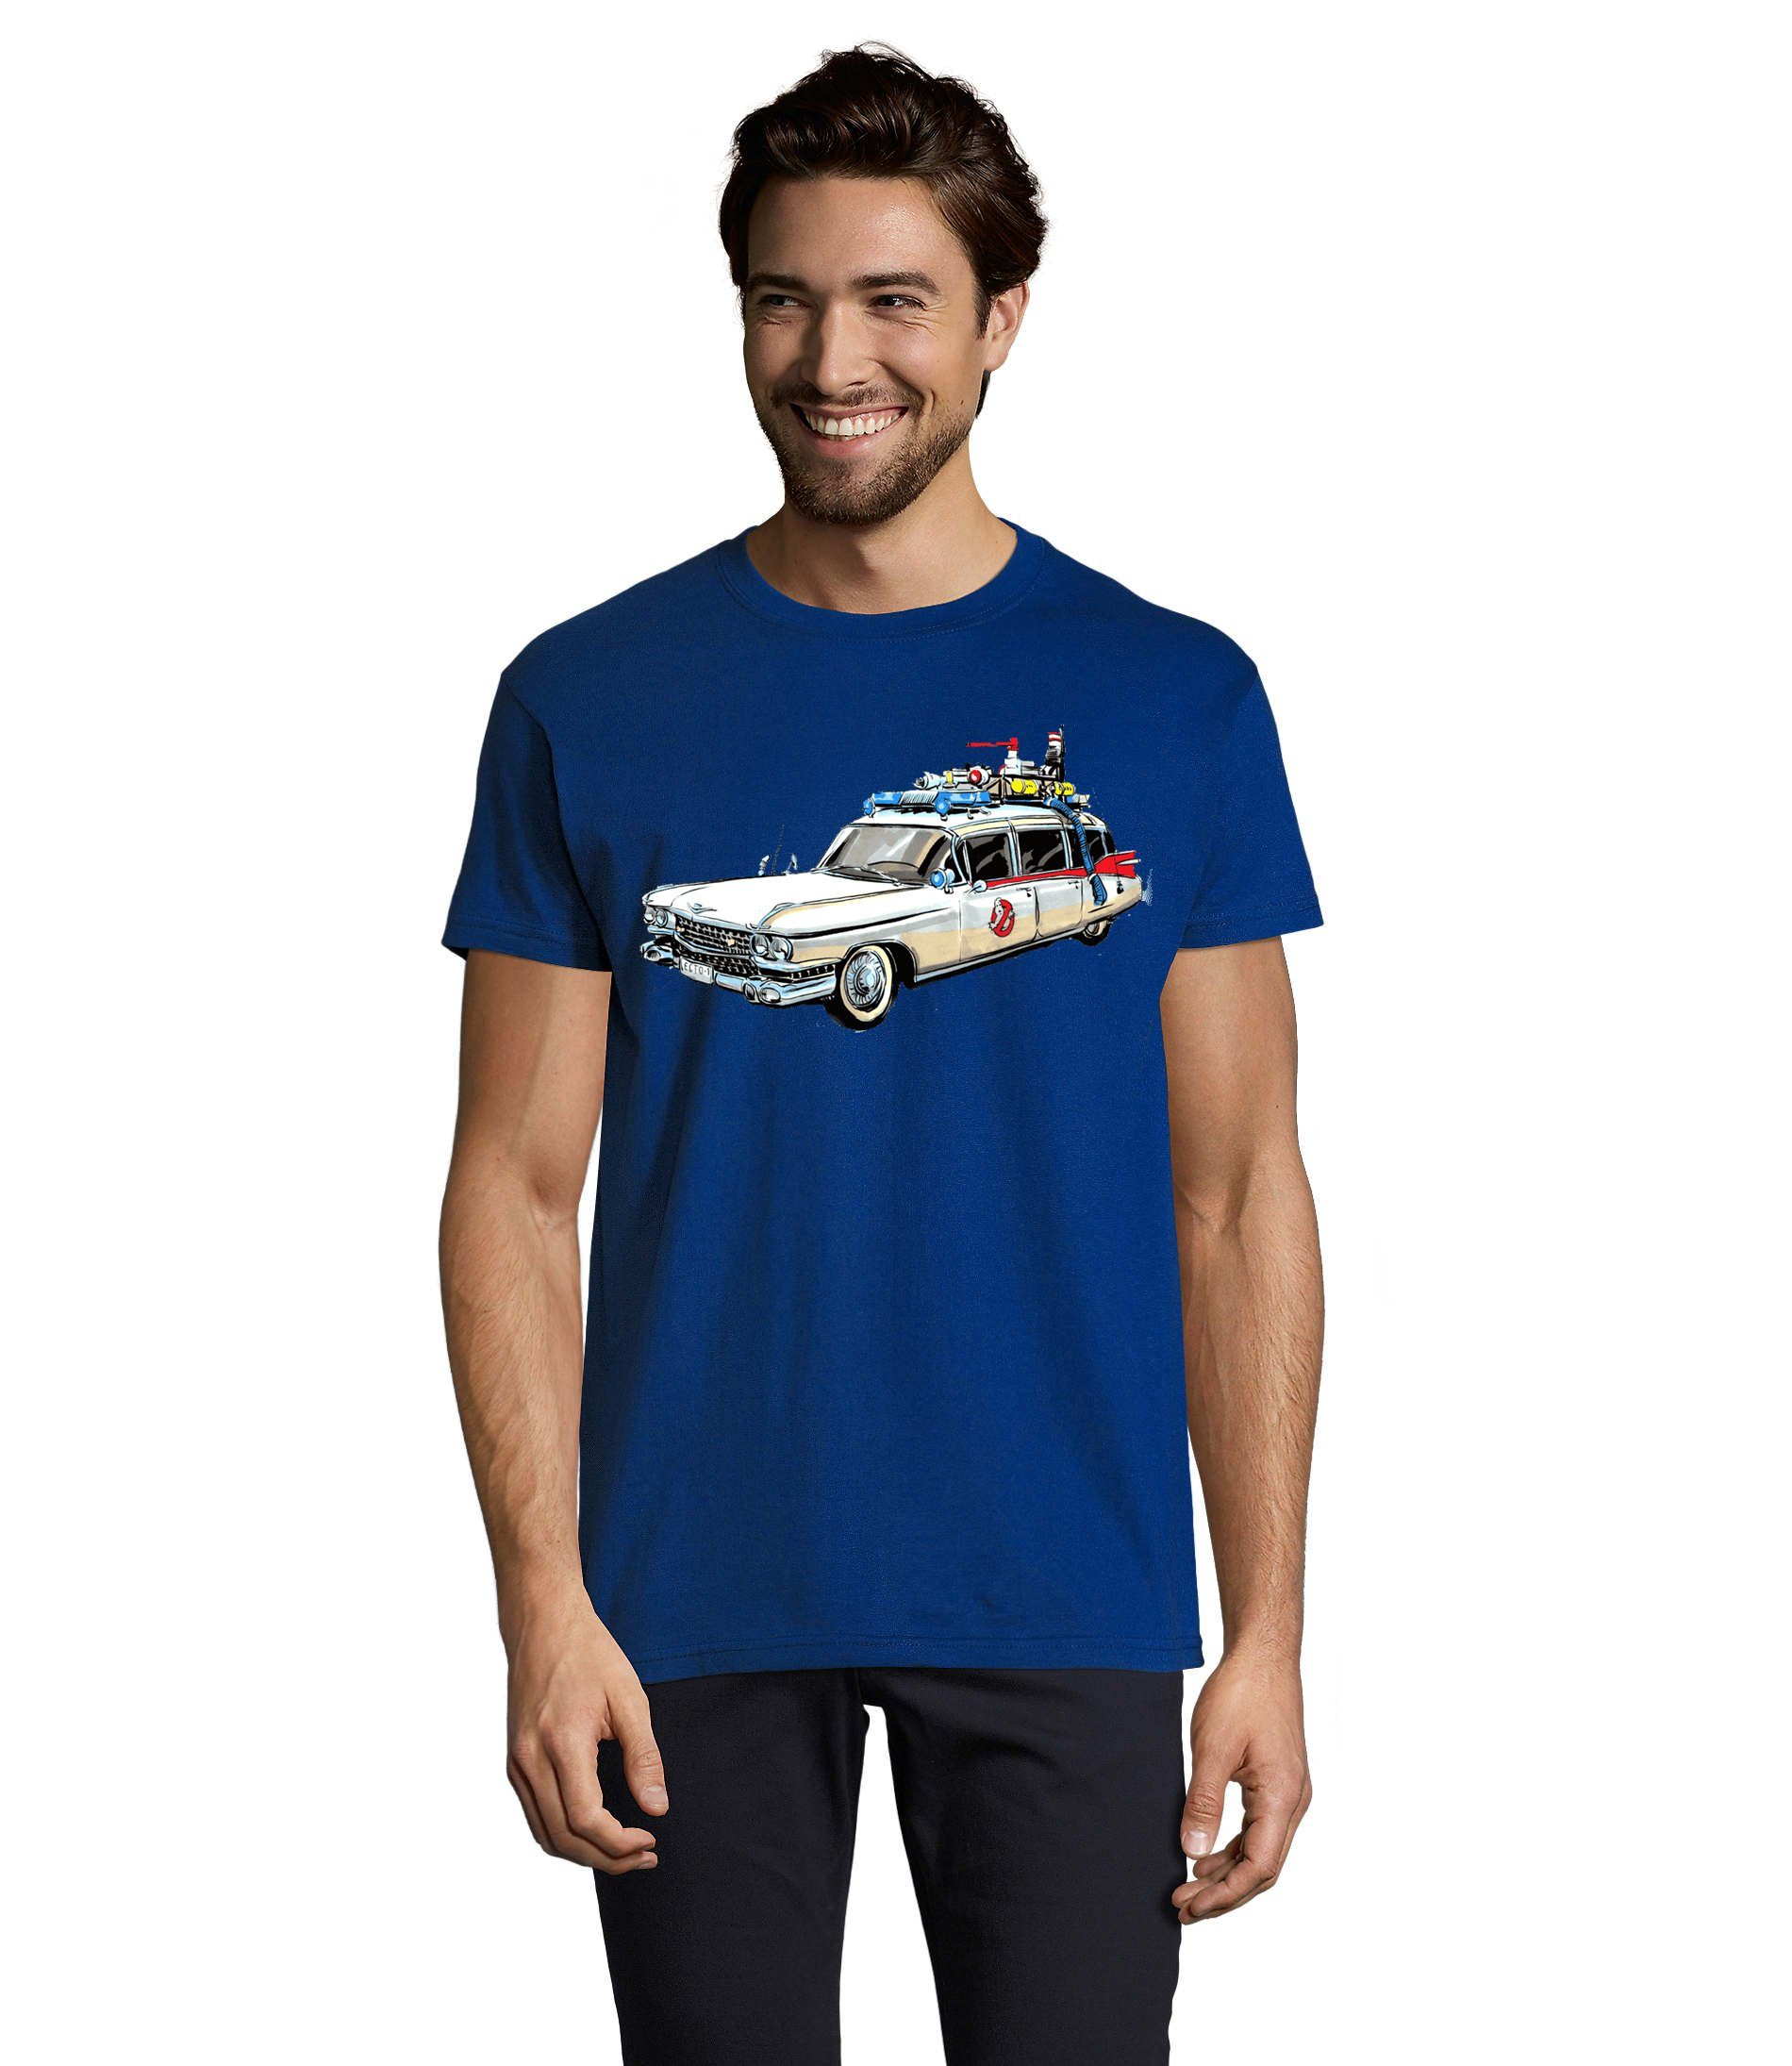 [Verkauf zum begrenzten Preis] Blondie & Brownie T-Shirt Herren Ghostbusters Cars Geister Film Auto Geisterjäger Ghost Blau